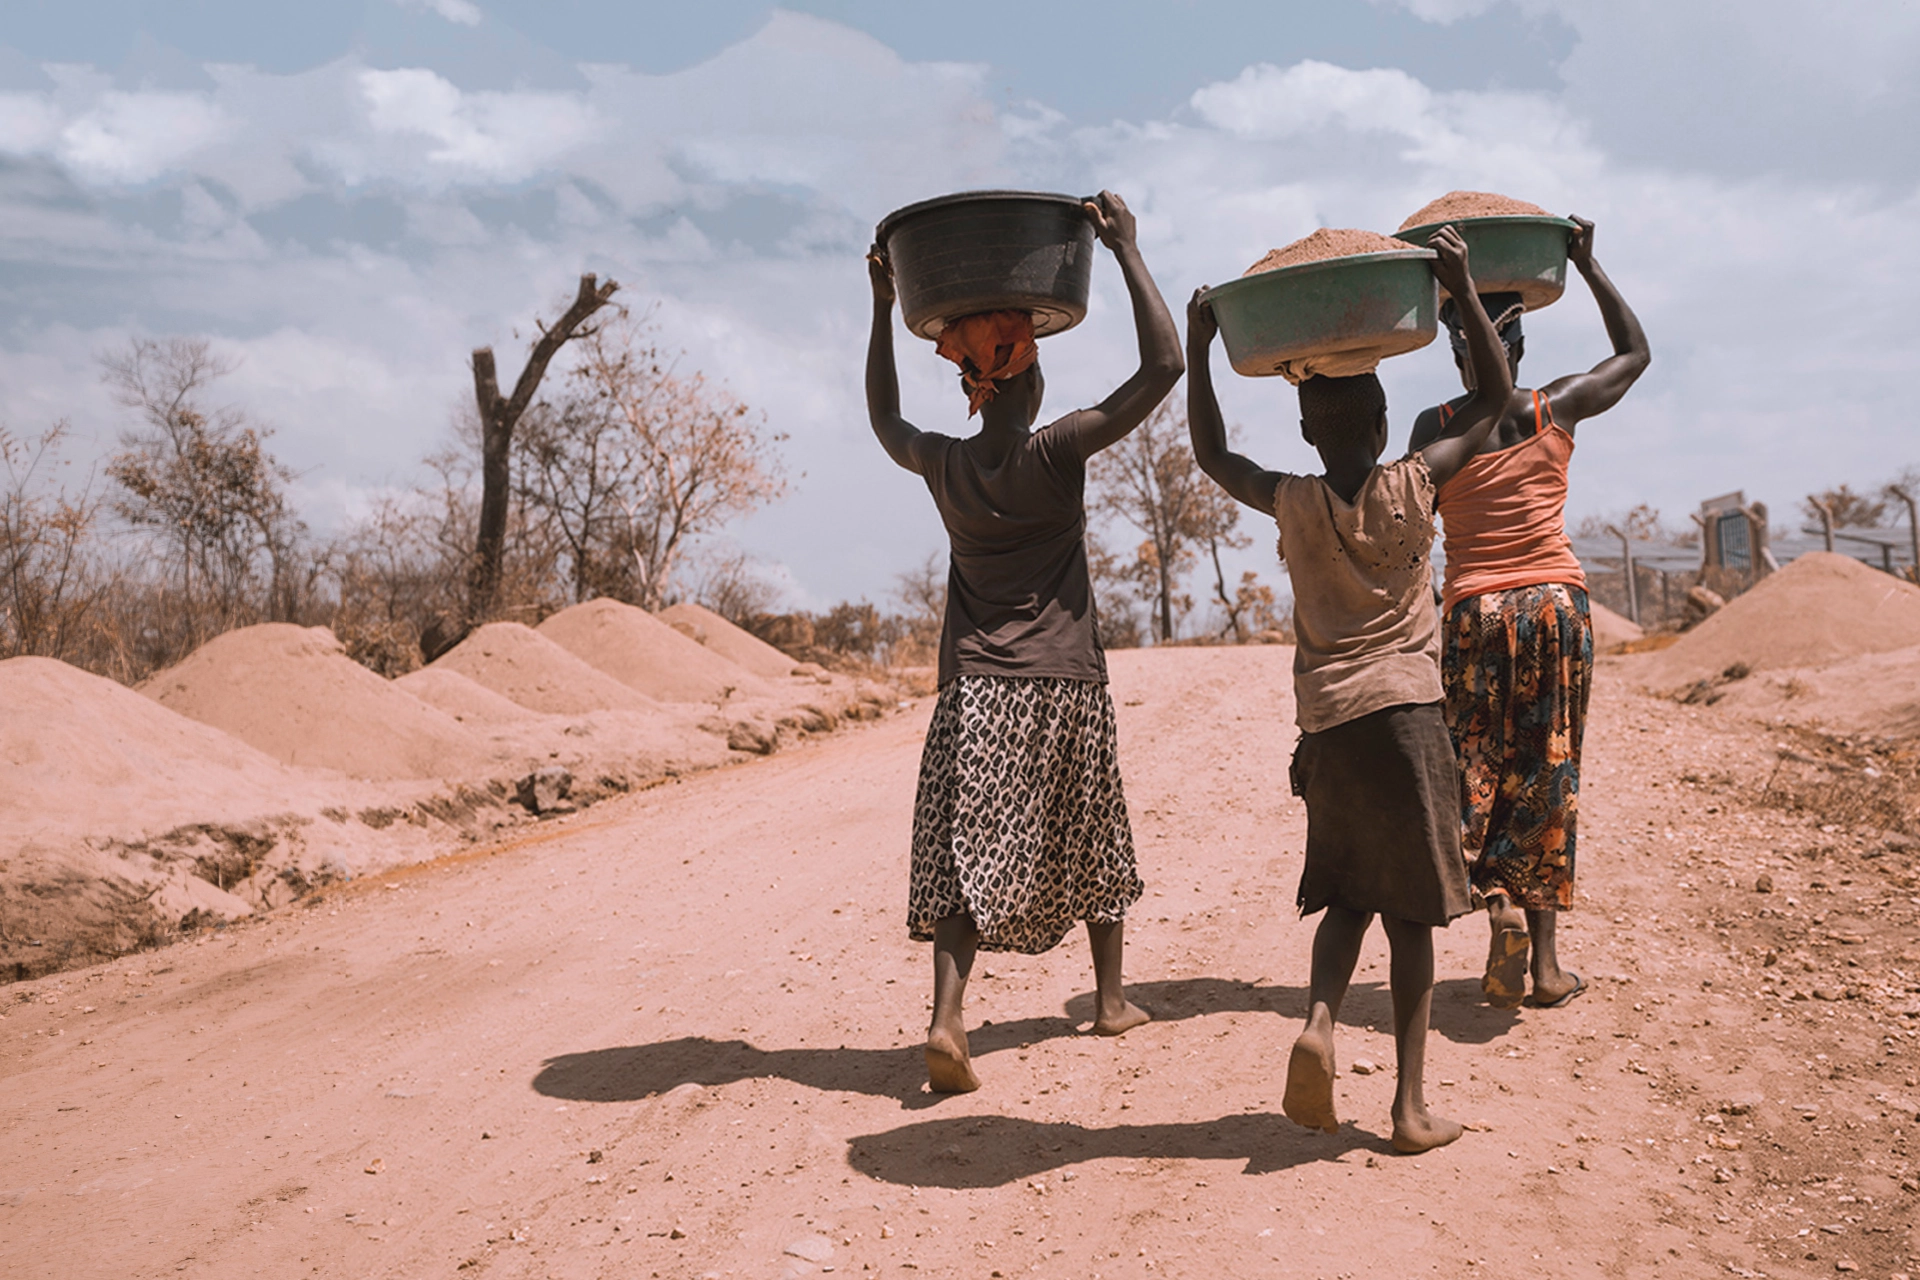 women carrying water